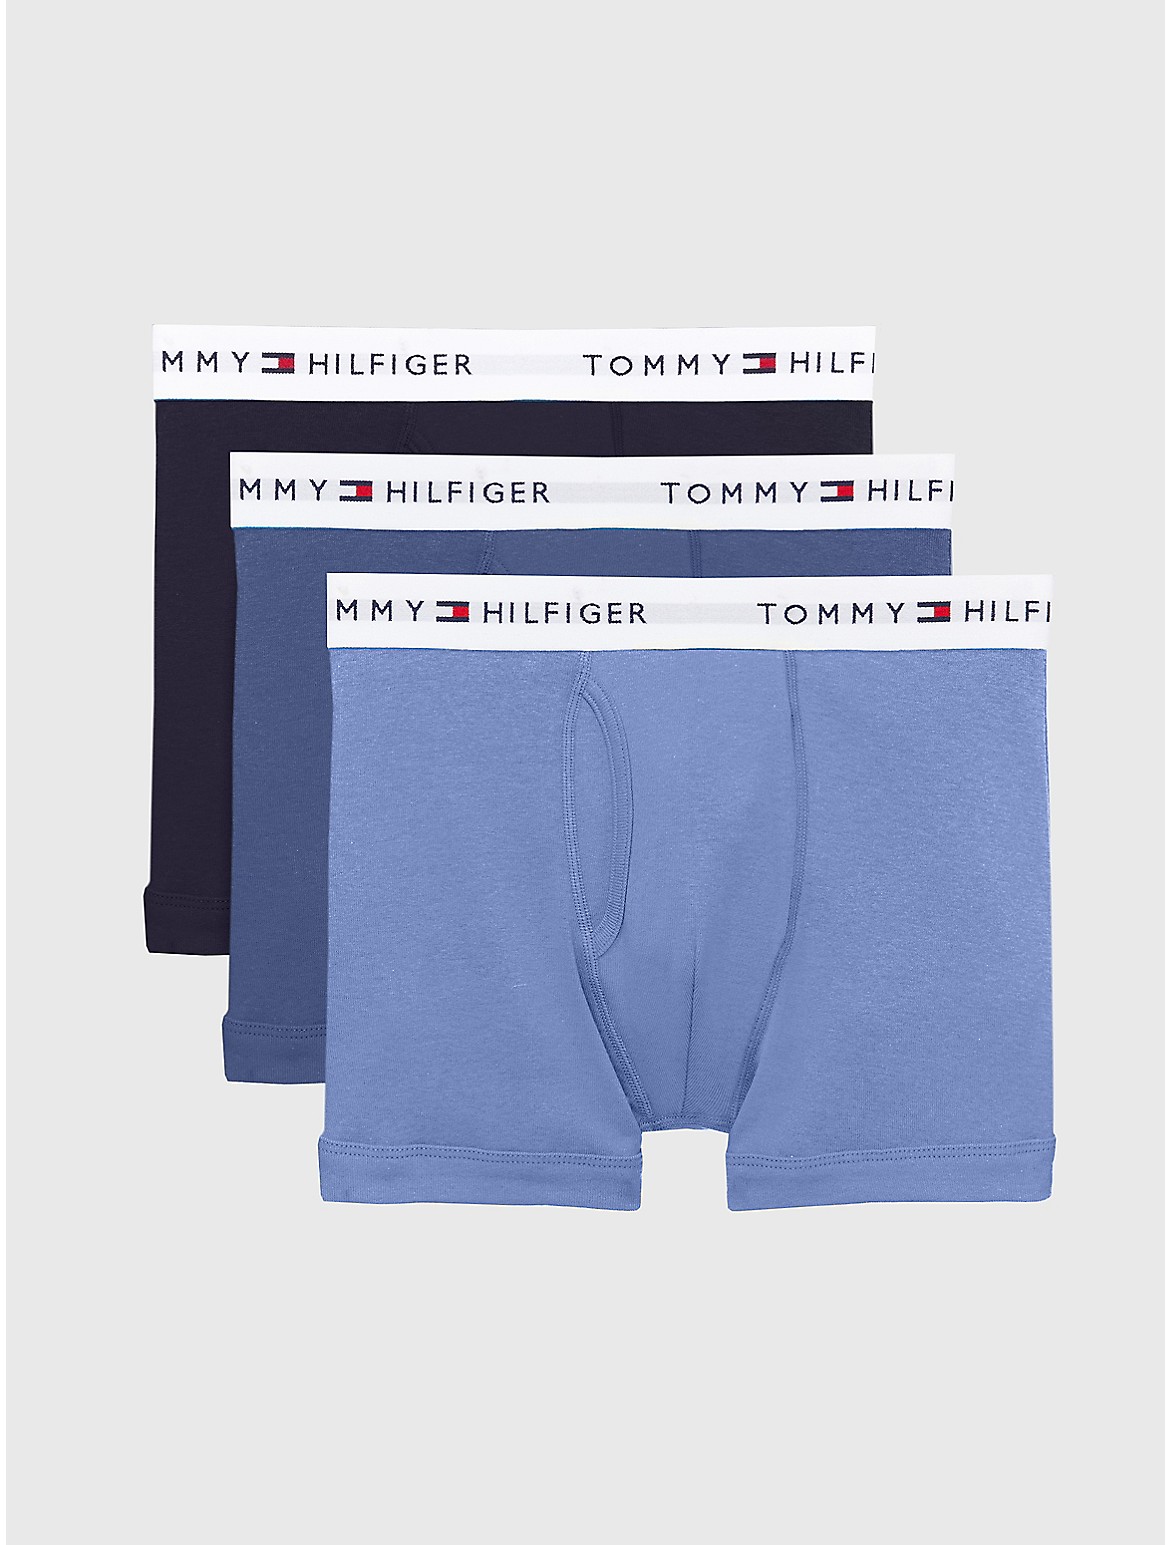 Tommy Hilfiger Men's Cotton Classics Trunk 3-Pack - Light/Pastel Blue - L